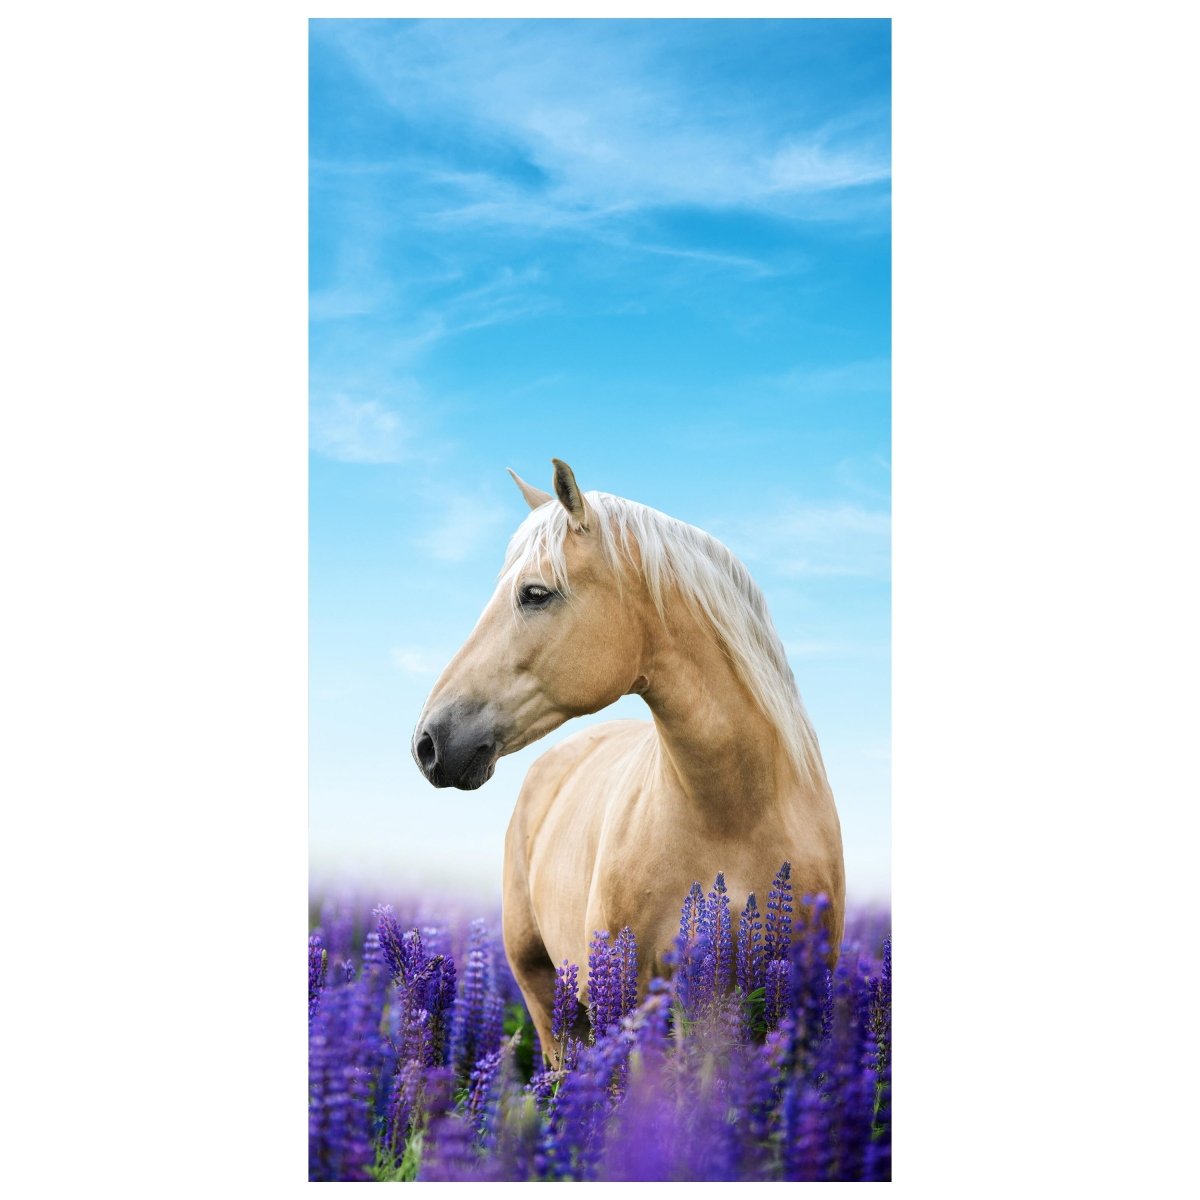 Türtapete Pferd in Lupinen Feld, Himmel, Lila M1170 - Bild 2